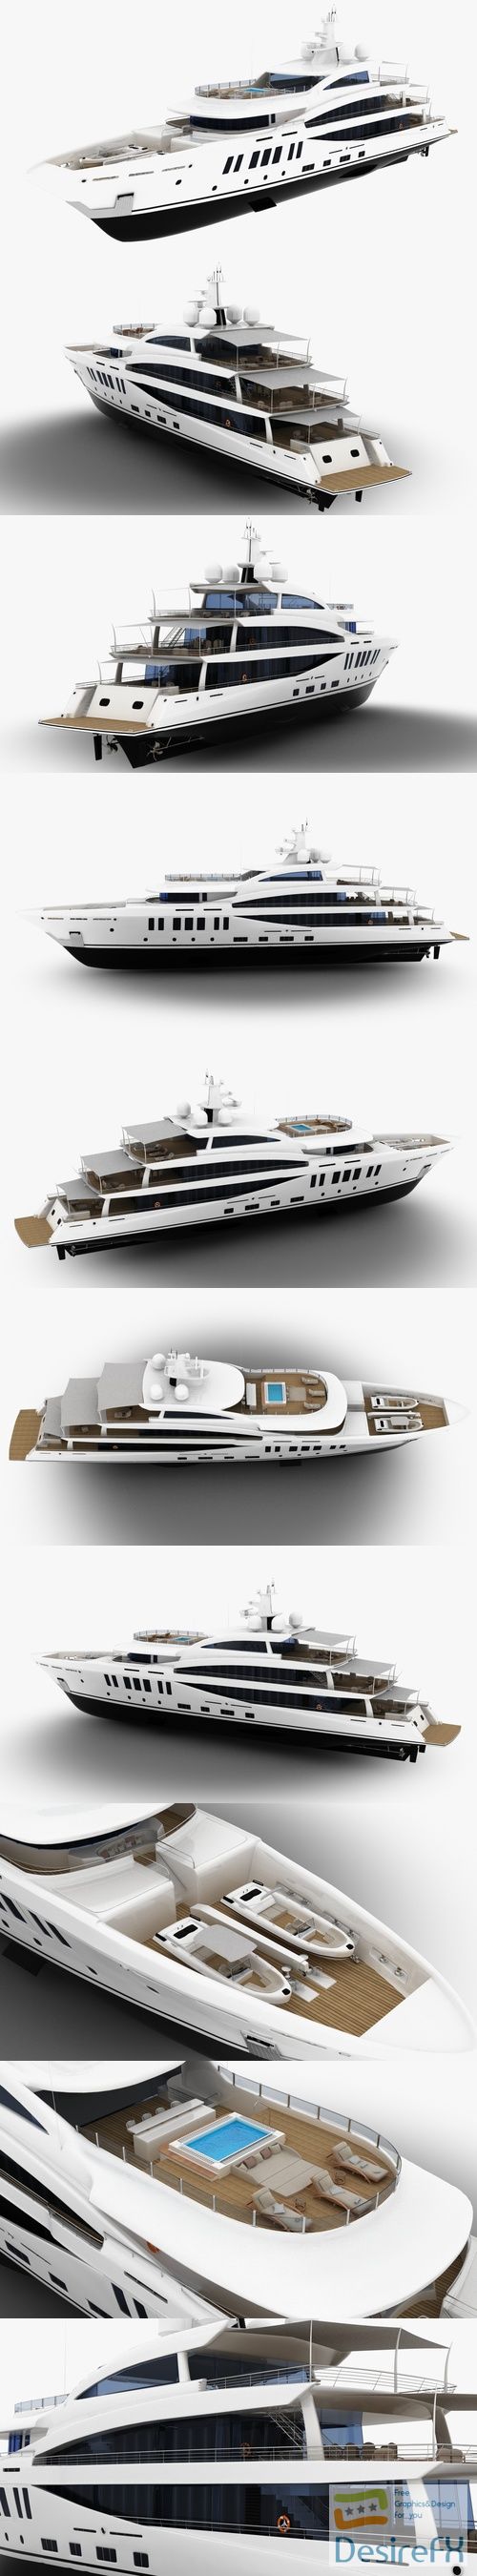 Amels 200 Yacht 3D Model